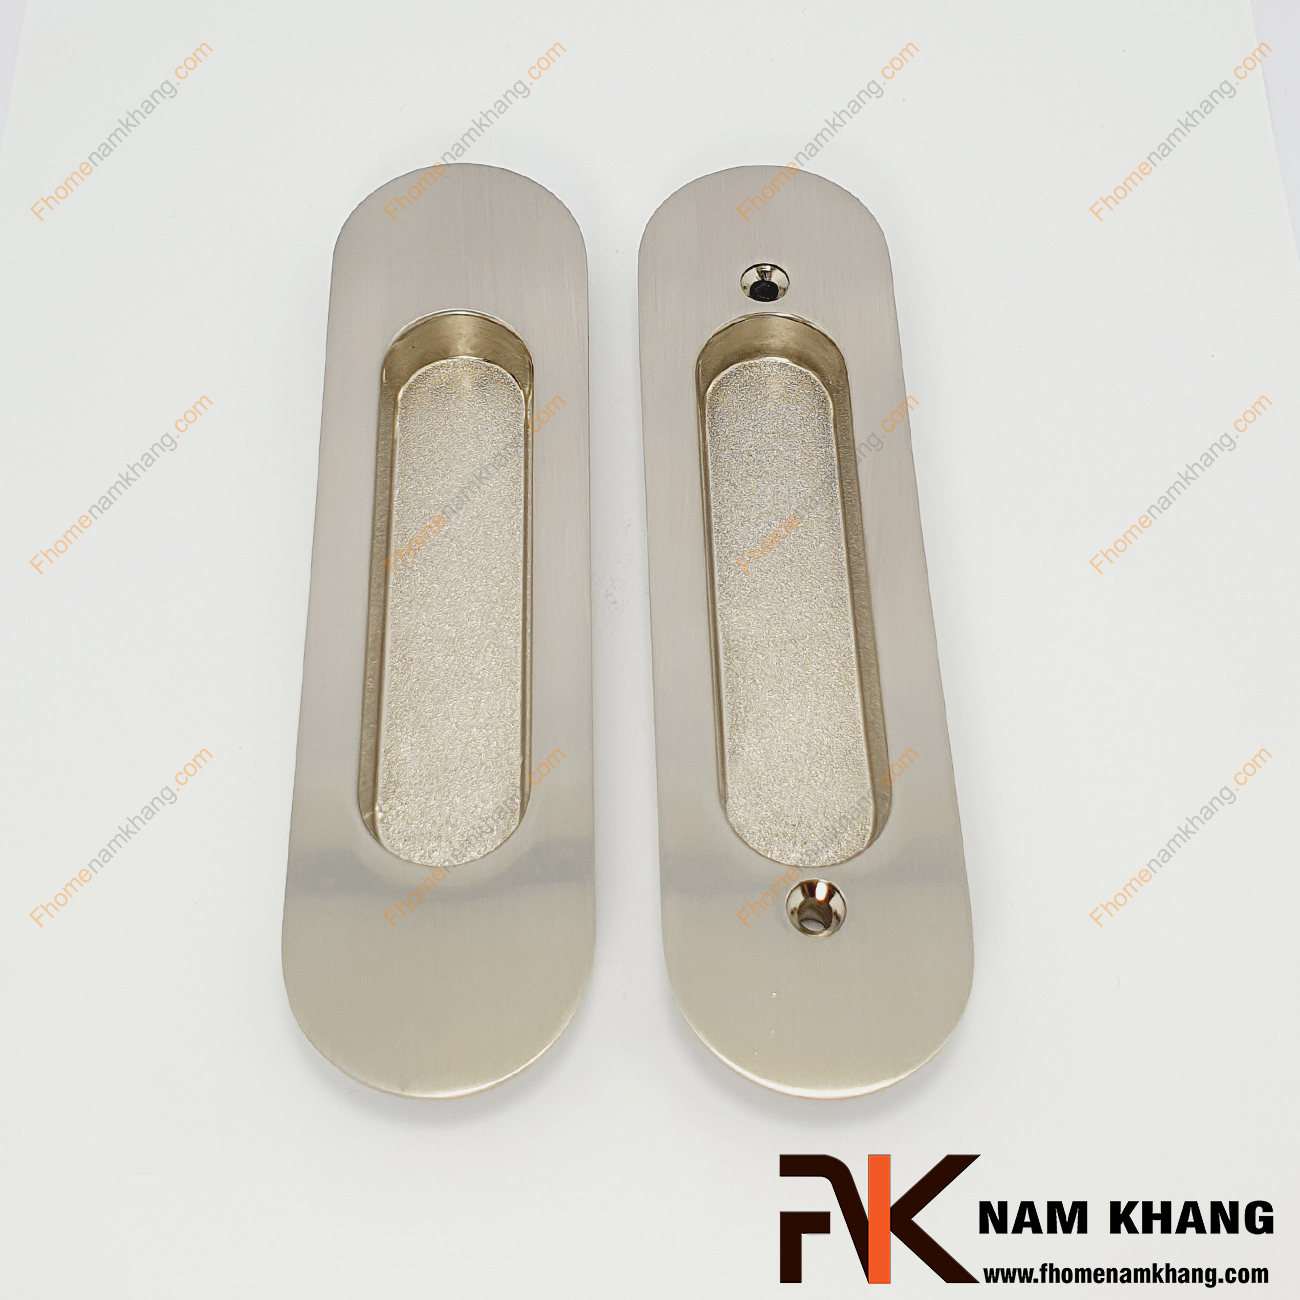 TAY ÂM LÙA BỘ NK061C-B là dòng tay nắm tủ dạng âm theo bộ dùng chính cho dòng cửa lùa. Sản phẩm tay nắm này bao gồm 2 phần bắt đối xứng với nhau qua cánh cửa và kết nối bằng 2 thanh vít.